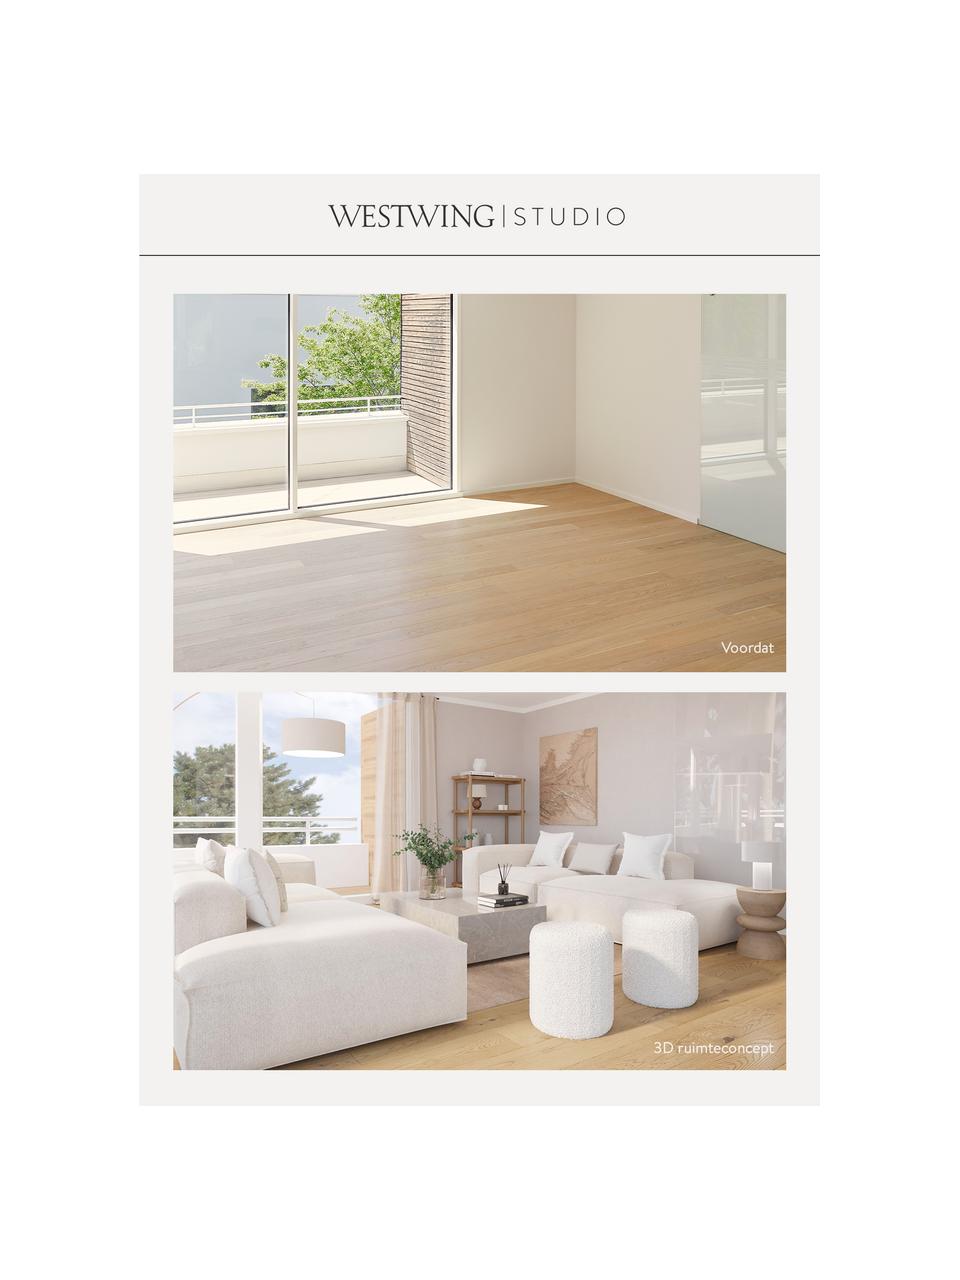 Westwing Studio | Premium advies voor uw kamer, Digitale voucher.
Na ontvangst van je bestelling nemen wij onmiddellijk contact met je op om een afspraak te maken voor een telefonisch consult met jouw persoonlijke interieurexpert., Wit, Woonruimte(s)